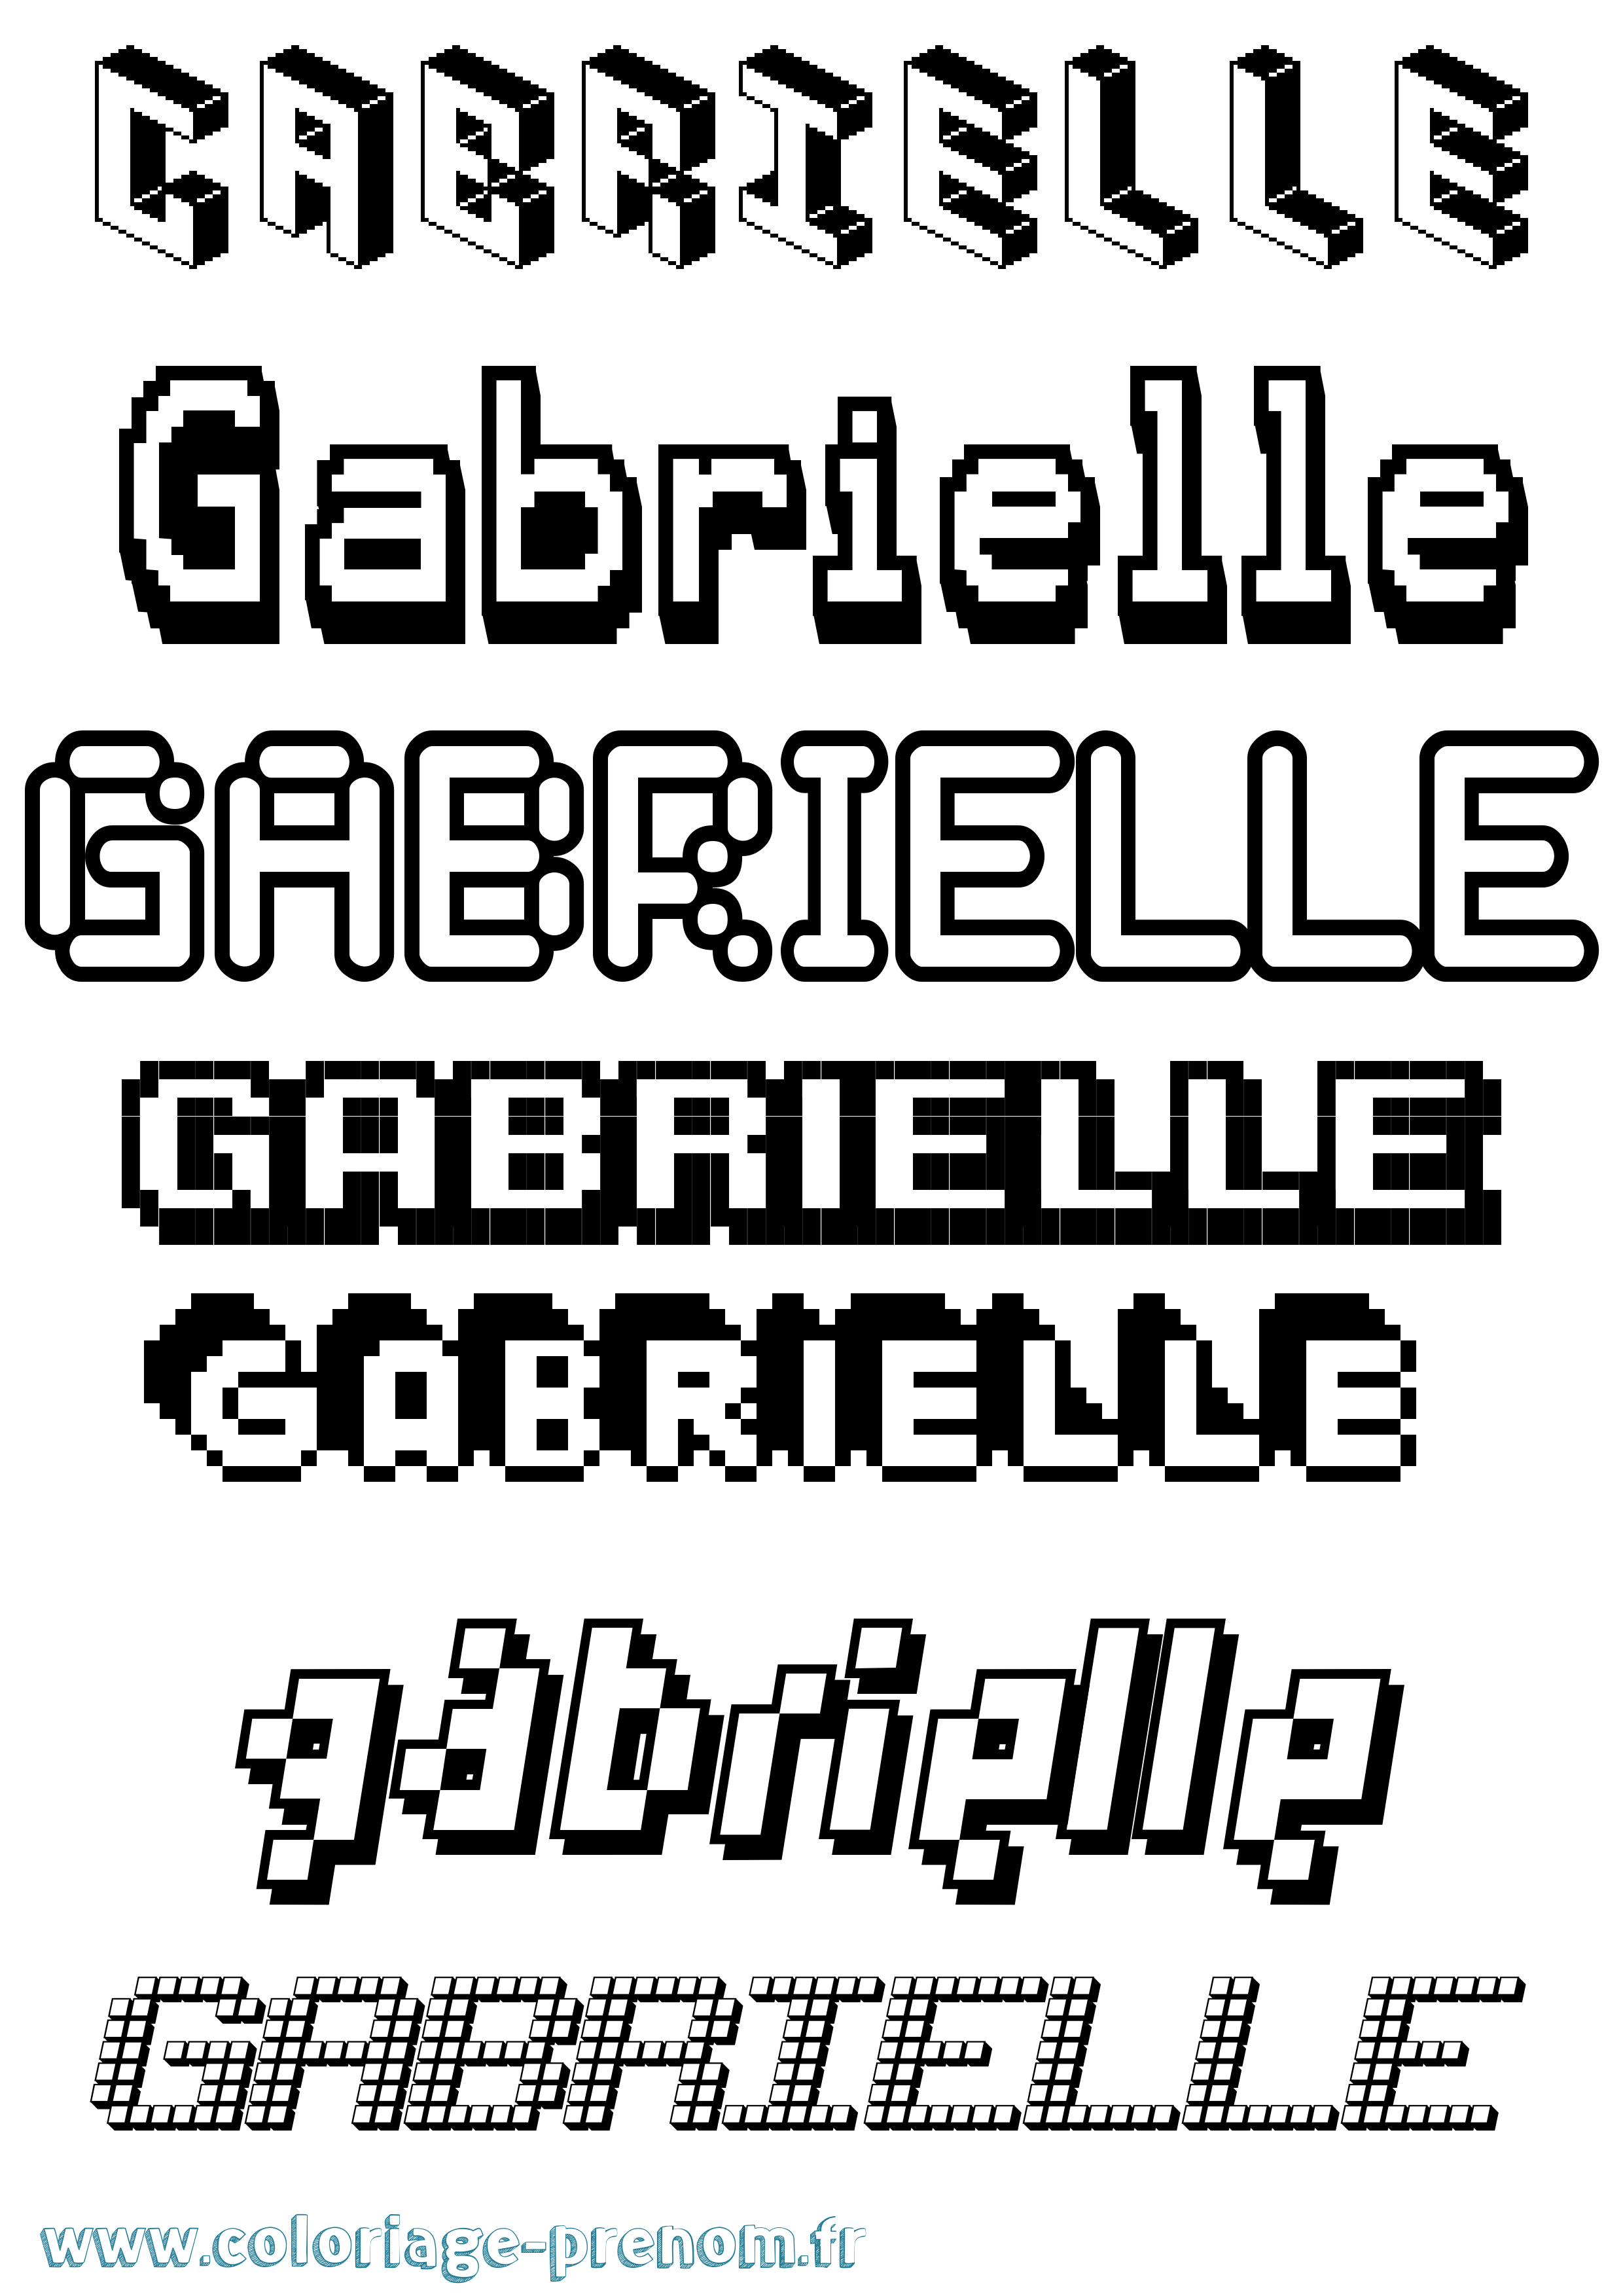 Coloriage prénom Gabrielle Pixel